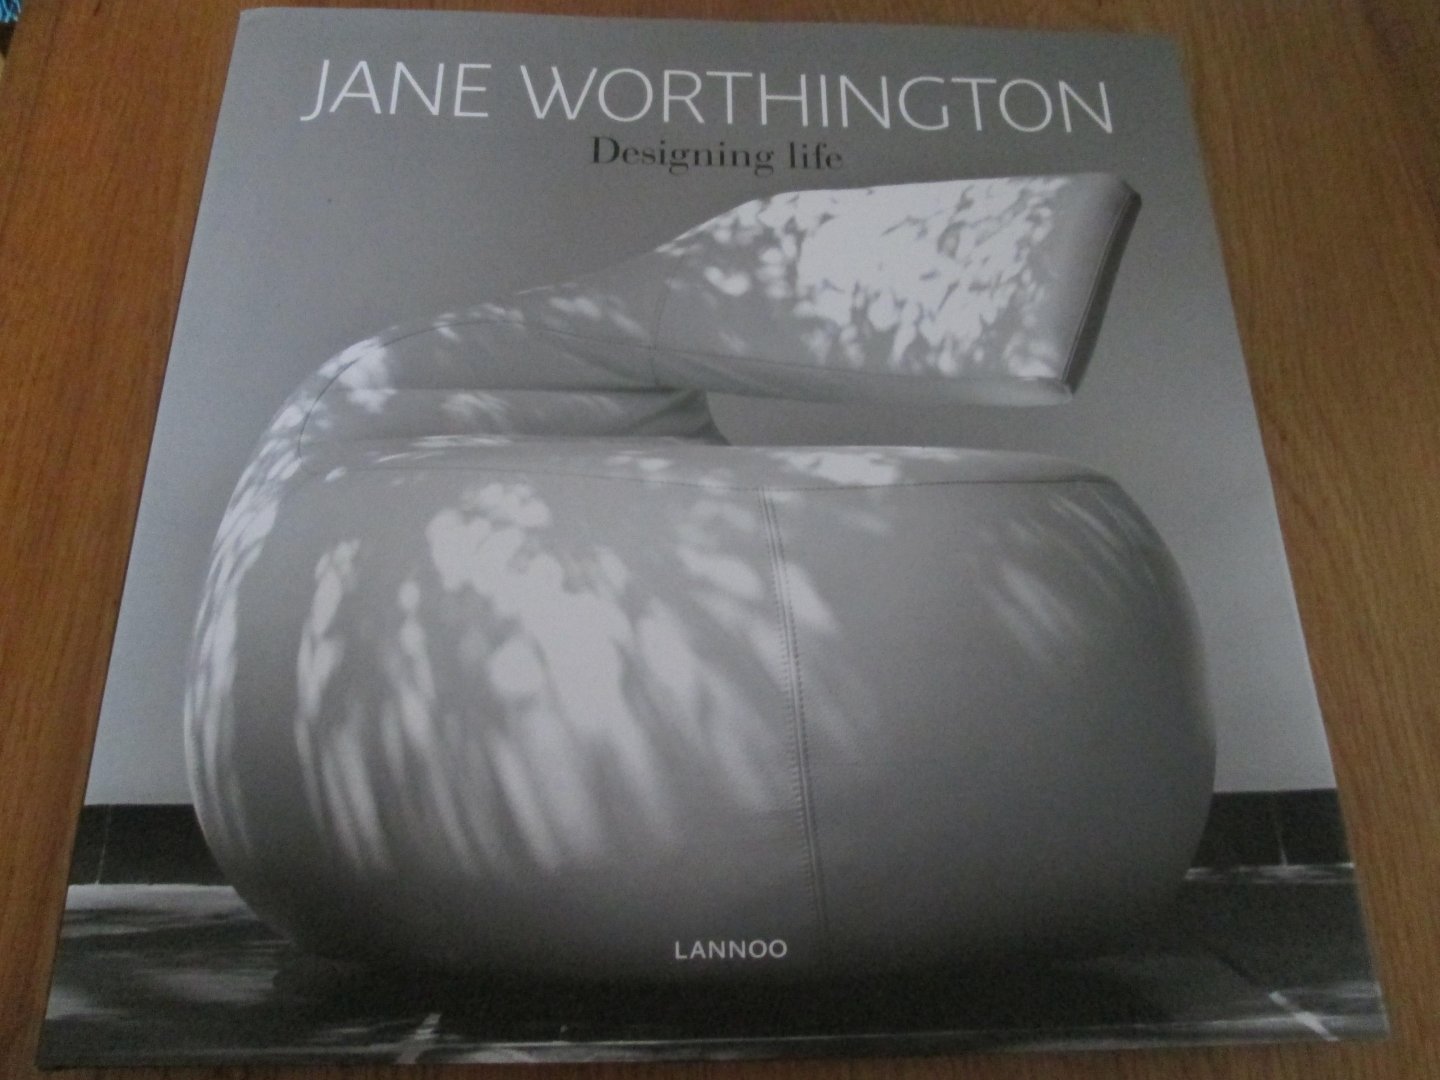 Worthington, Jane - Jane Worthington / designing life